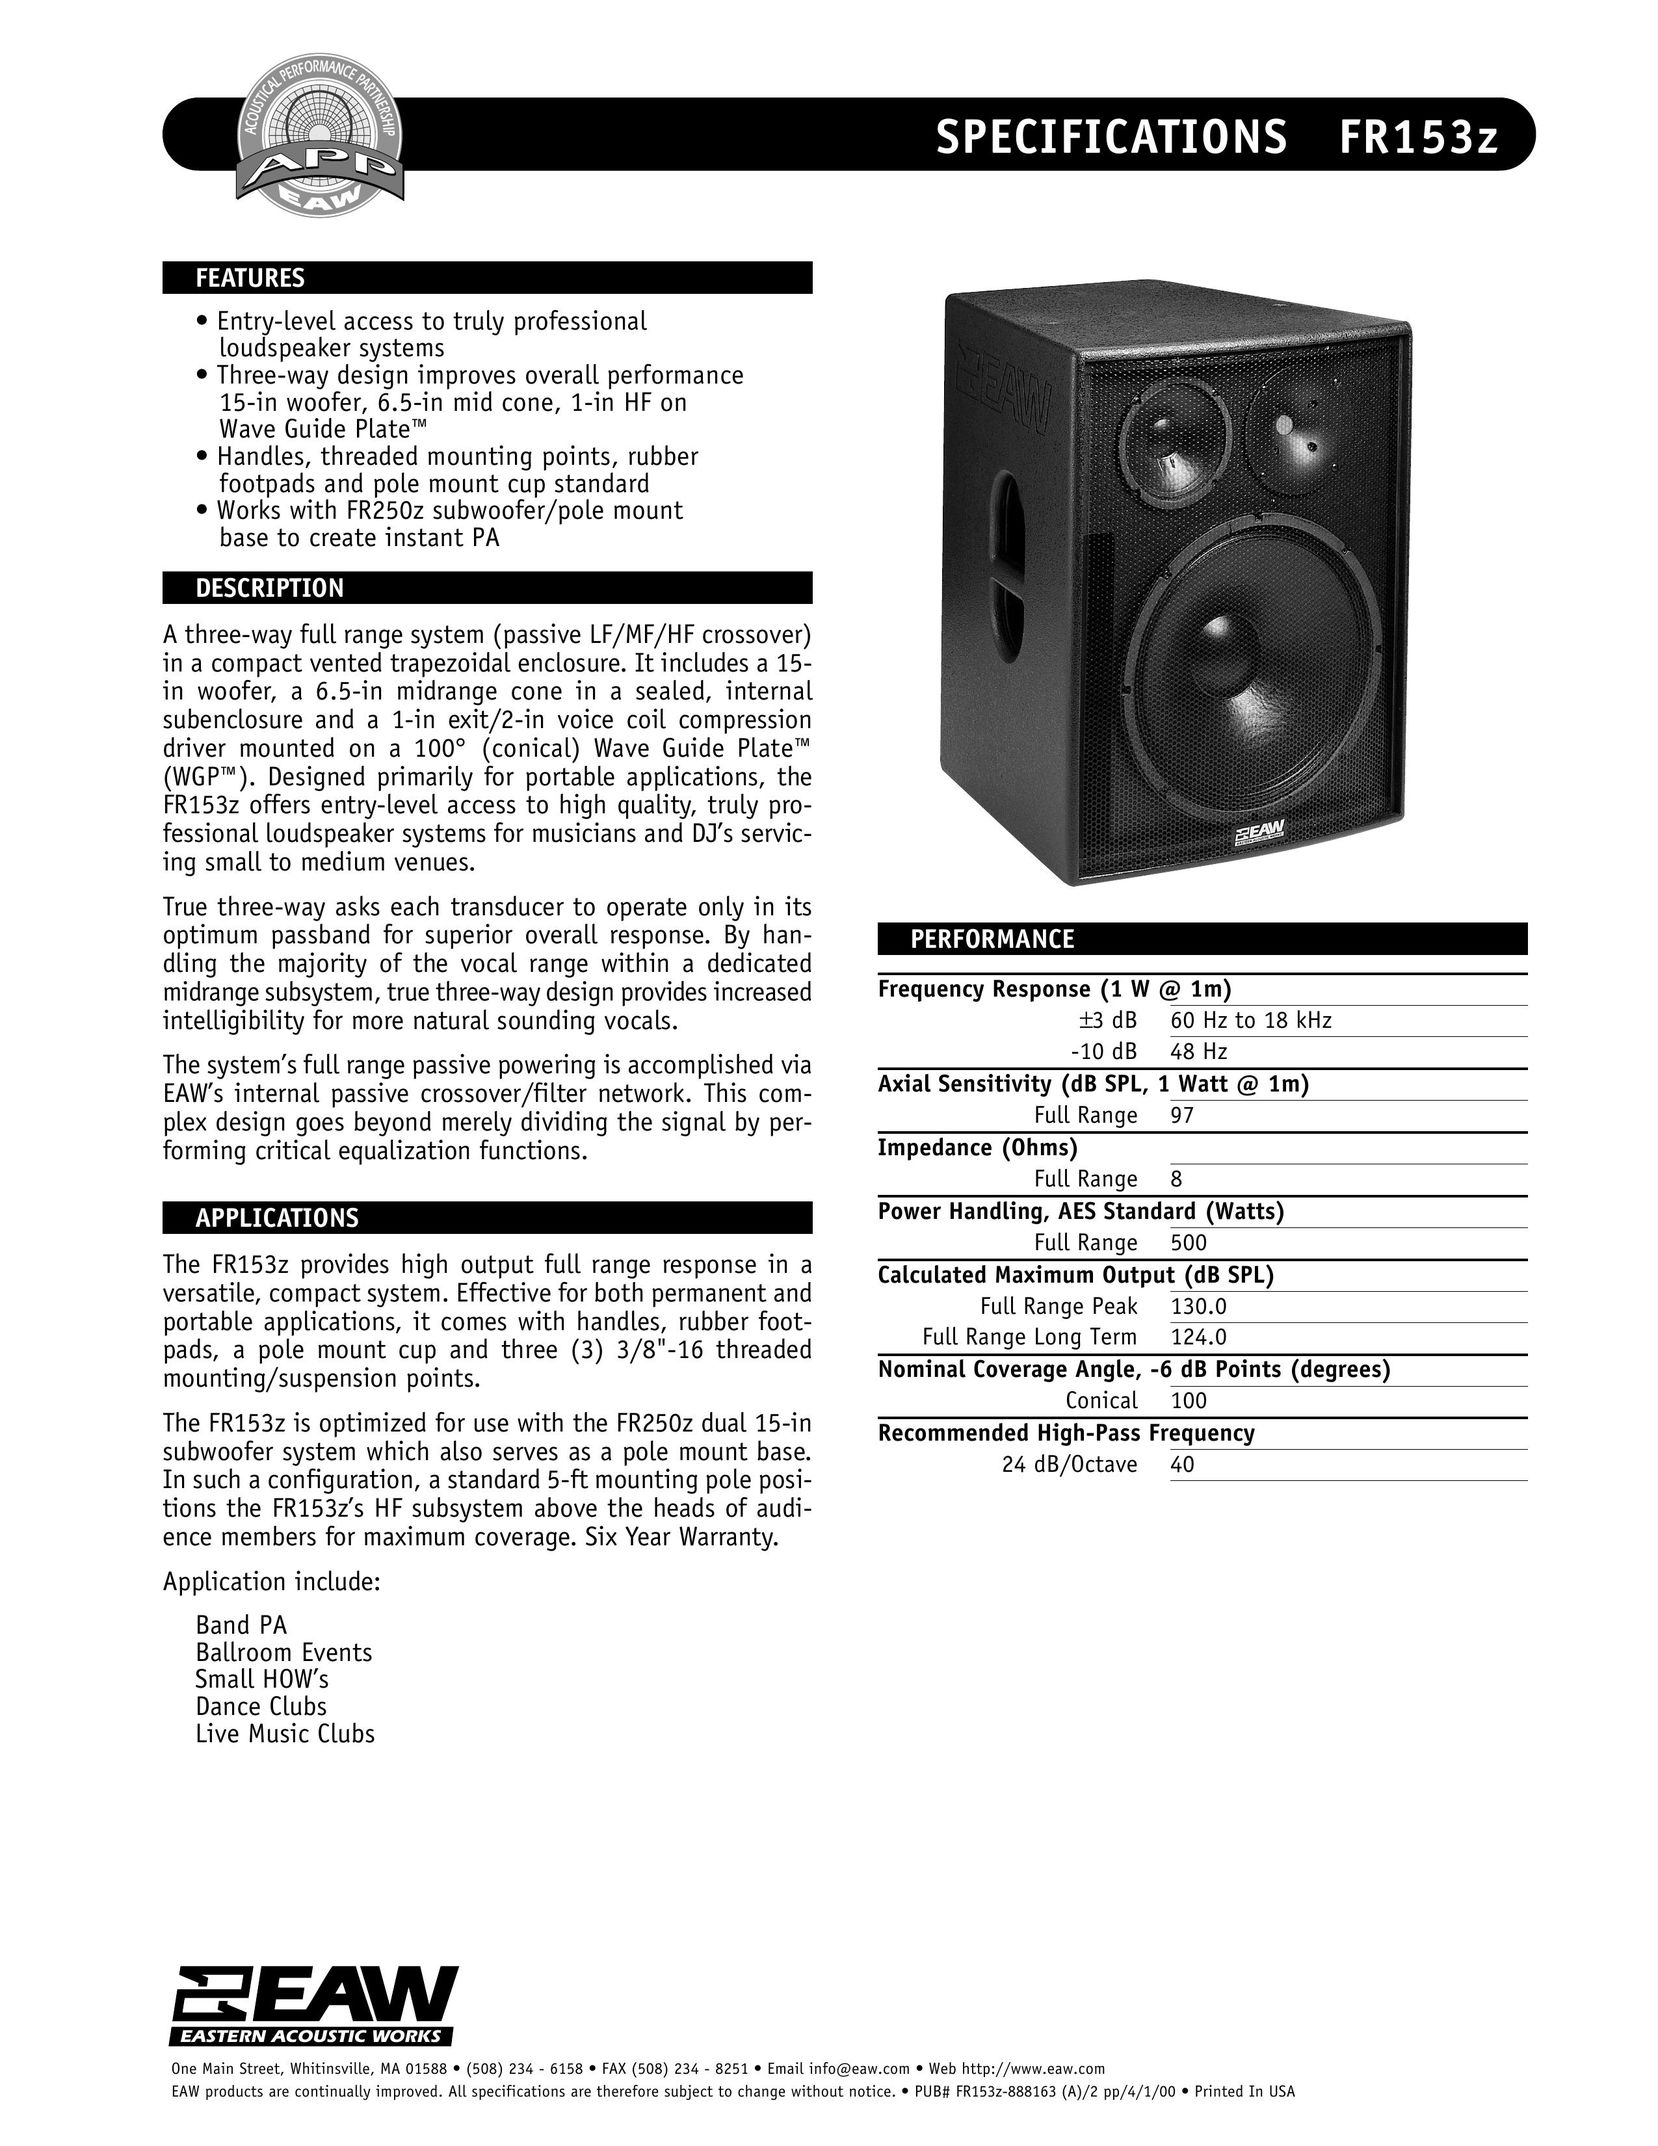 EAW FR153z Portable Speaker User Manual